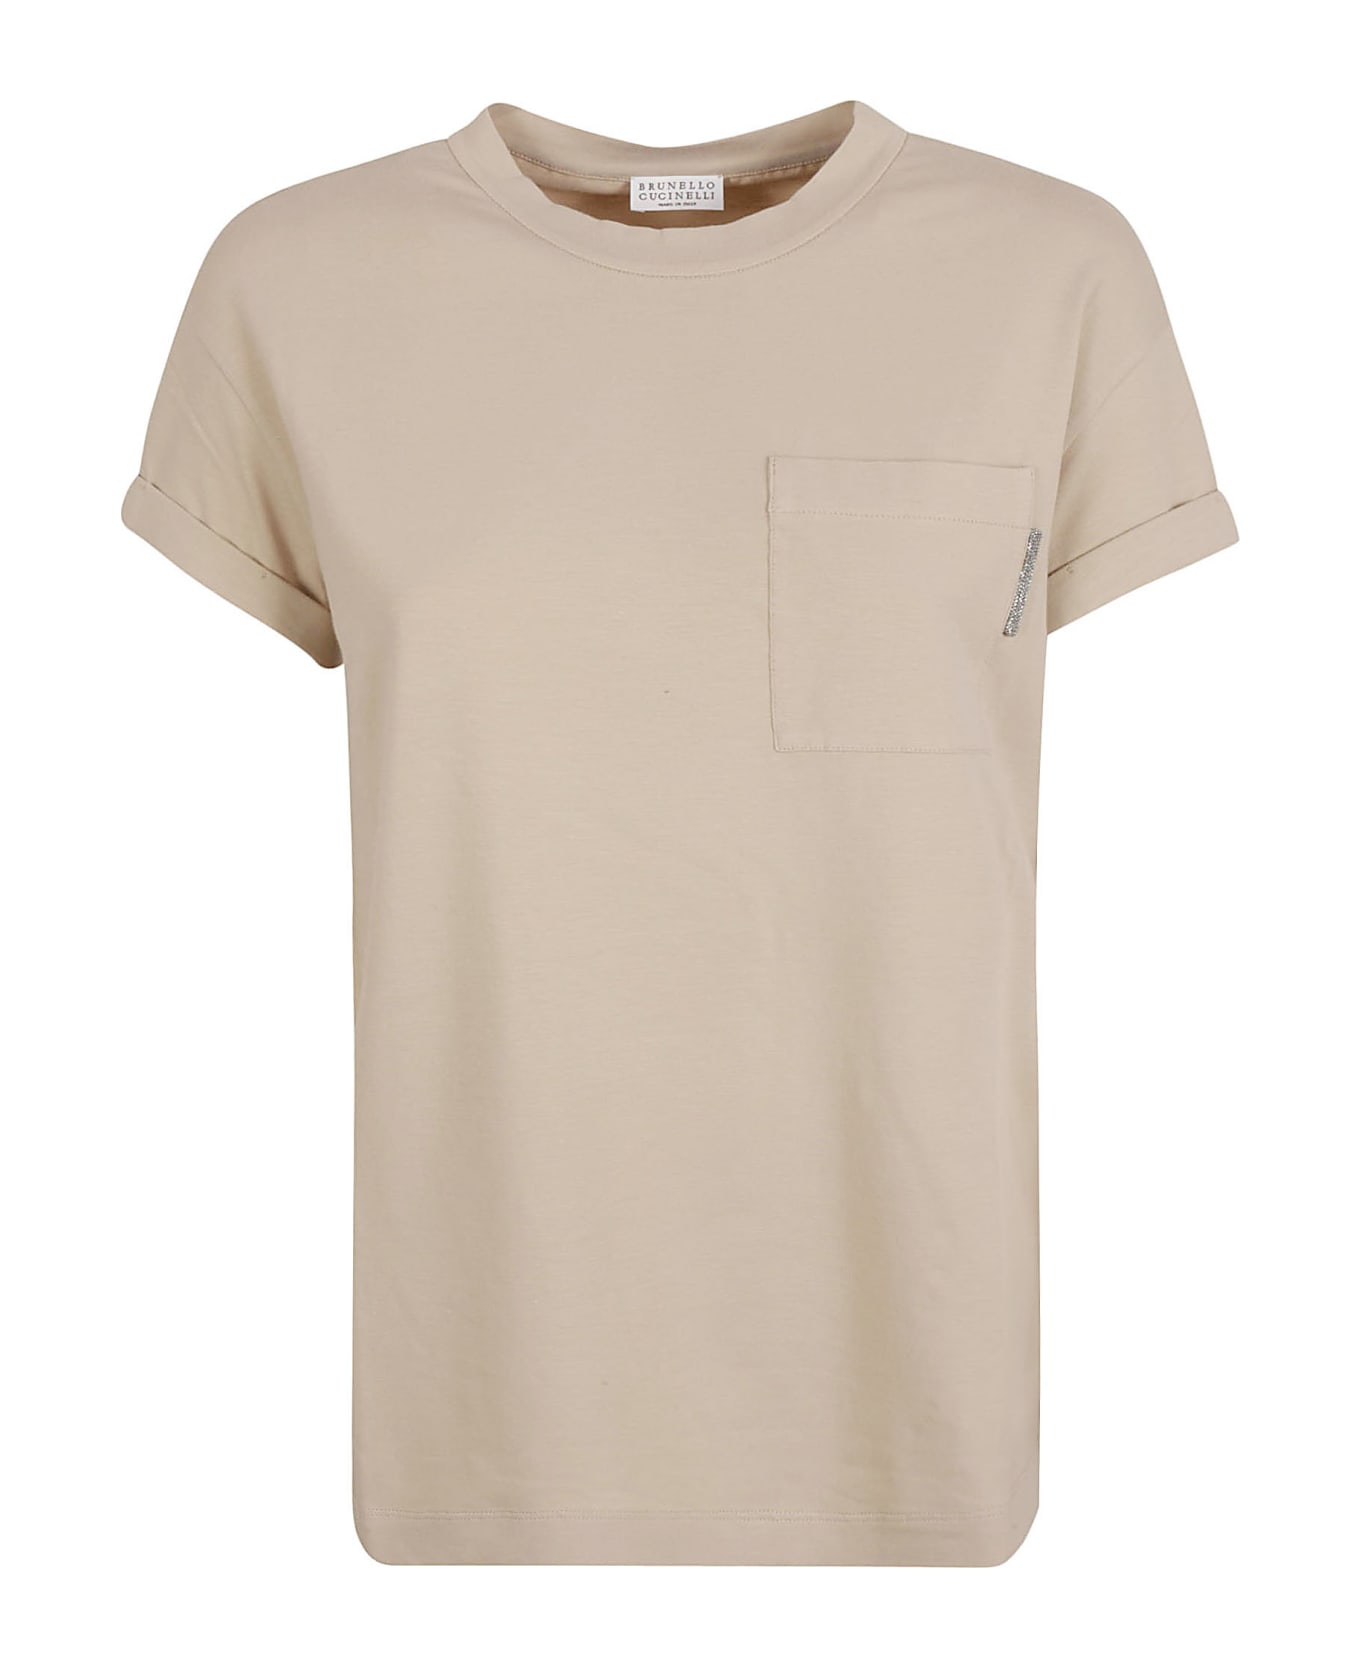 Brunello Cucinelli Patched Pocket Plain T-shirt - Beige